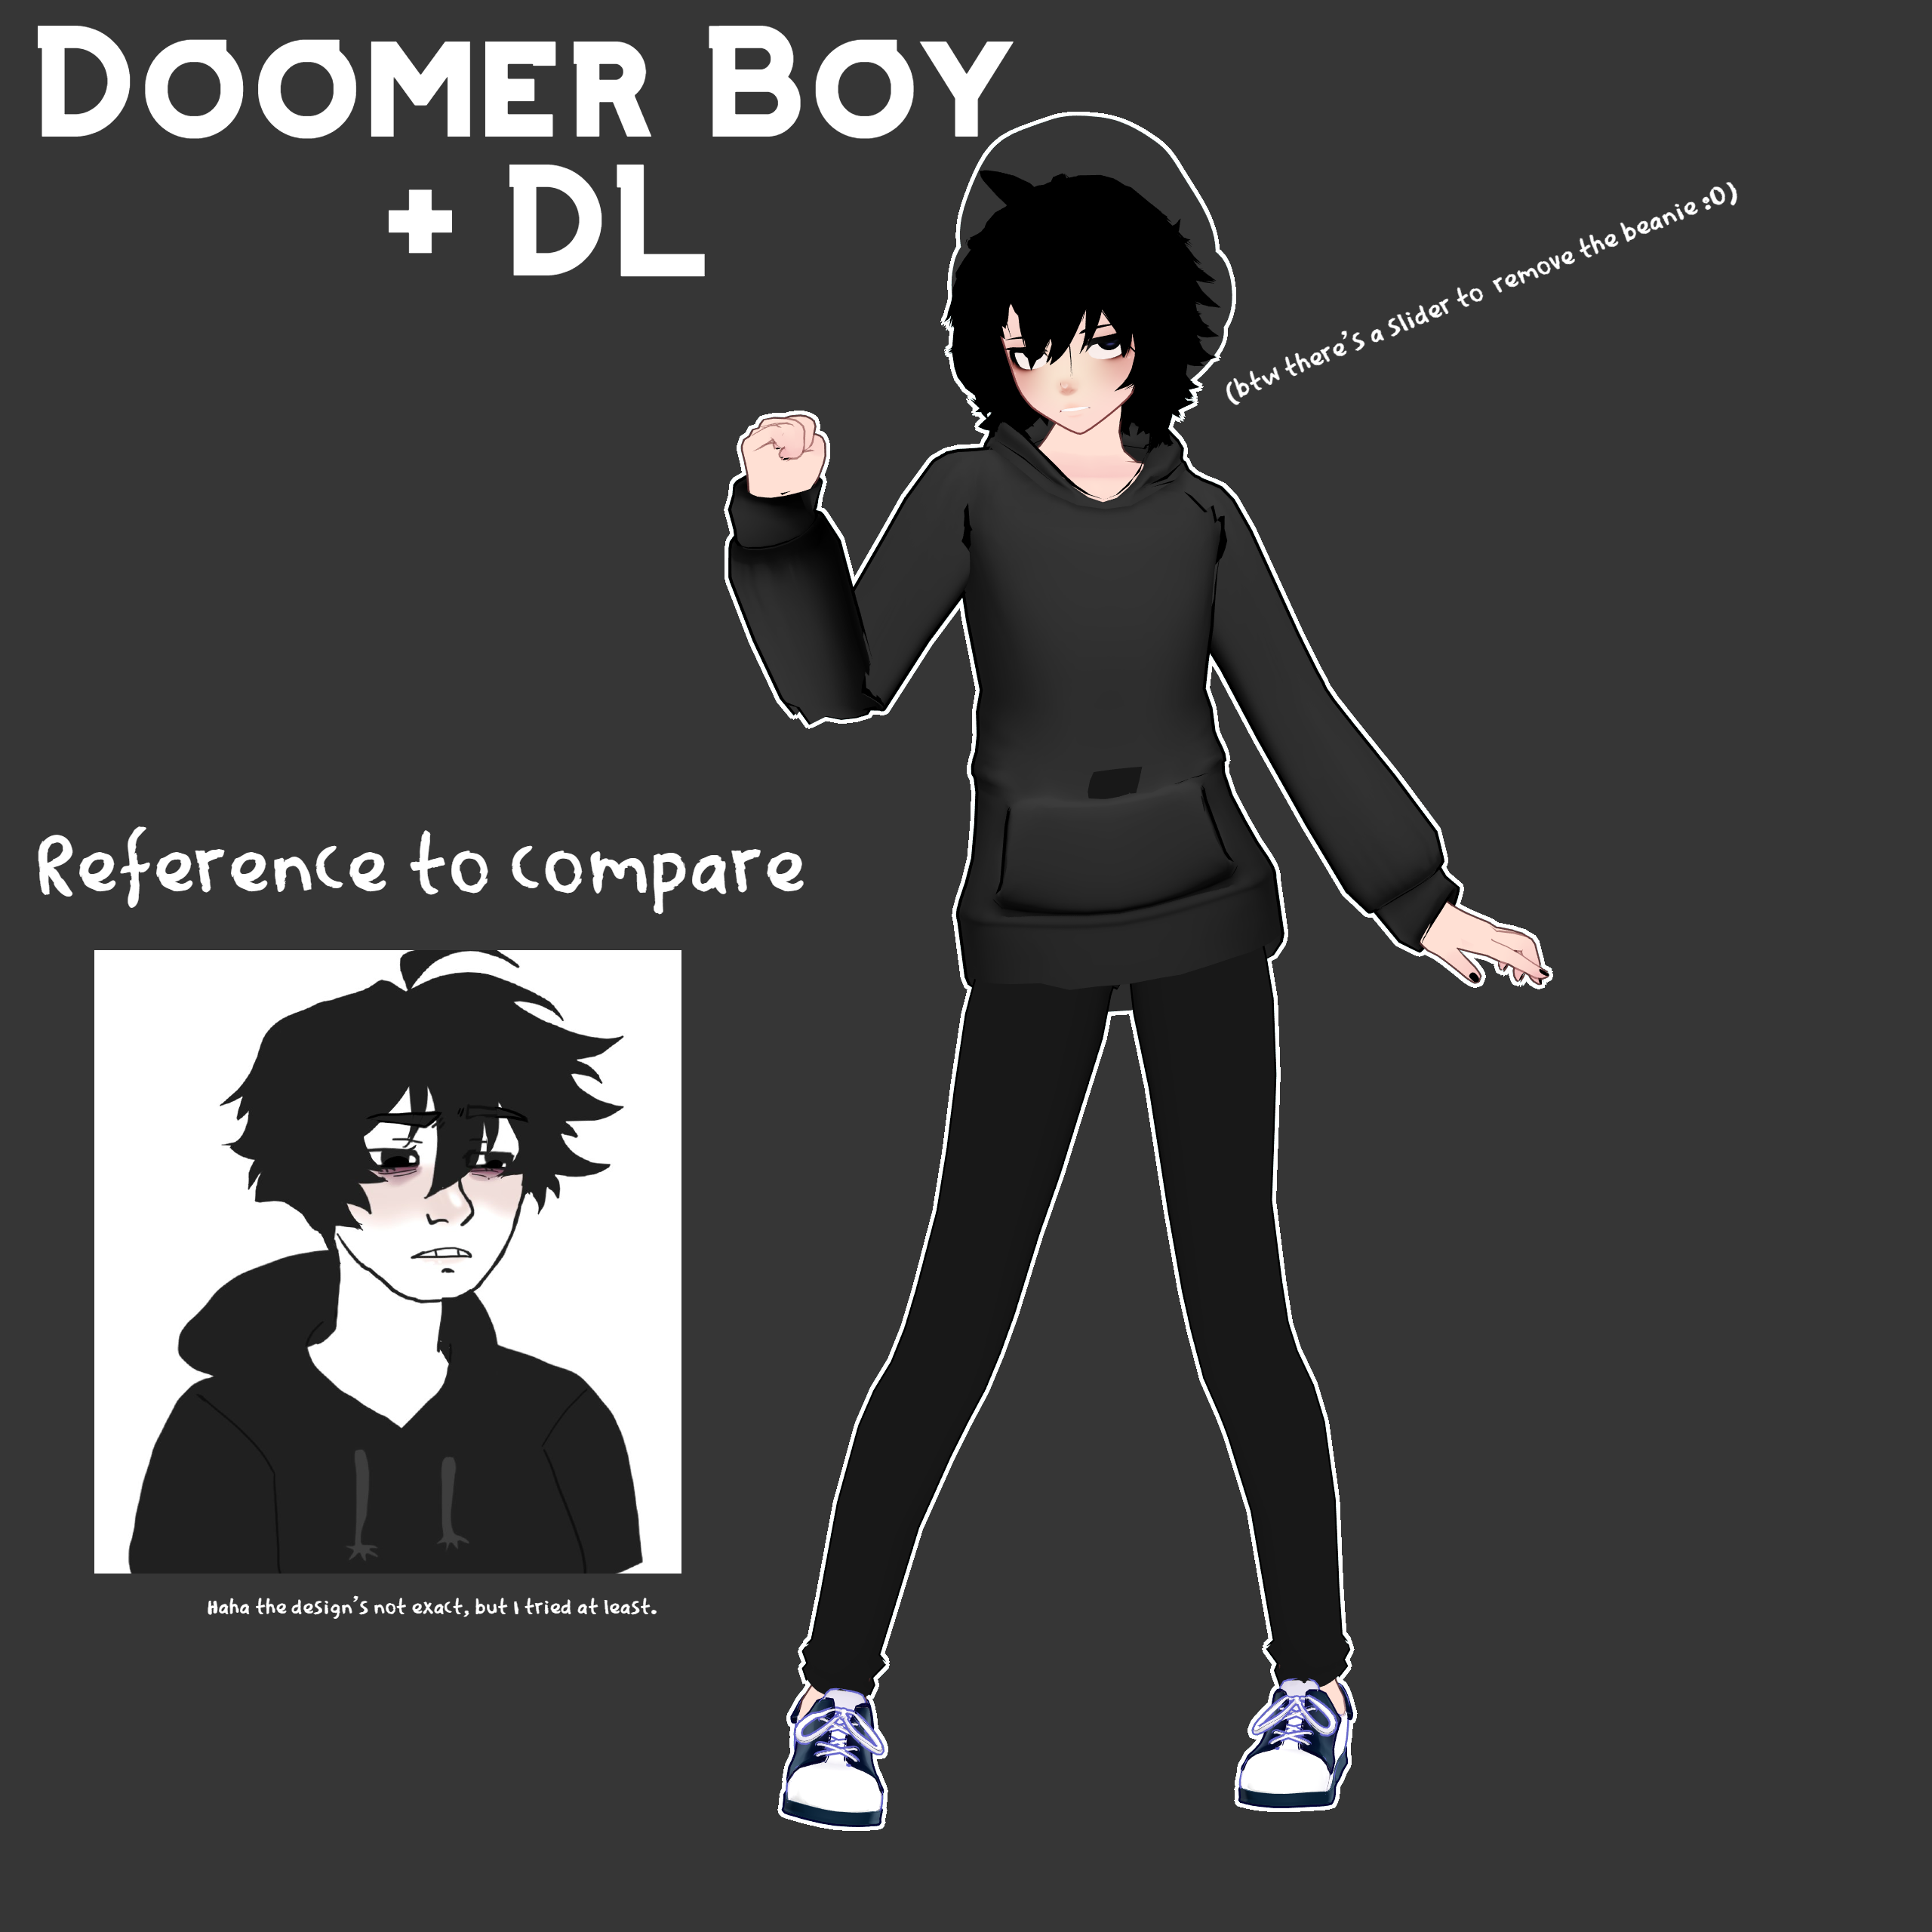 MMD x Wojak(?) :. Doomer Boy + DL by BowlOfSpicyramen on DeviantArt